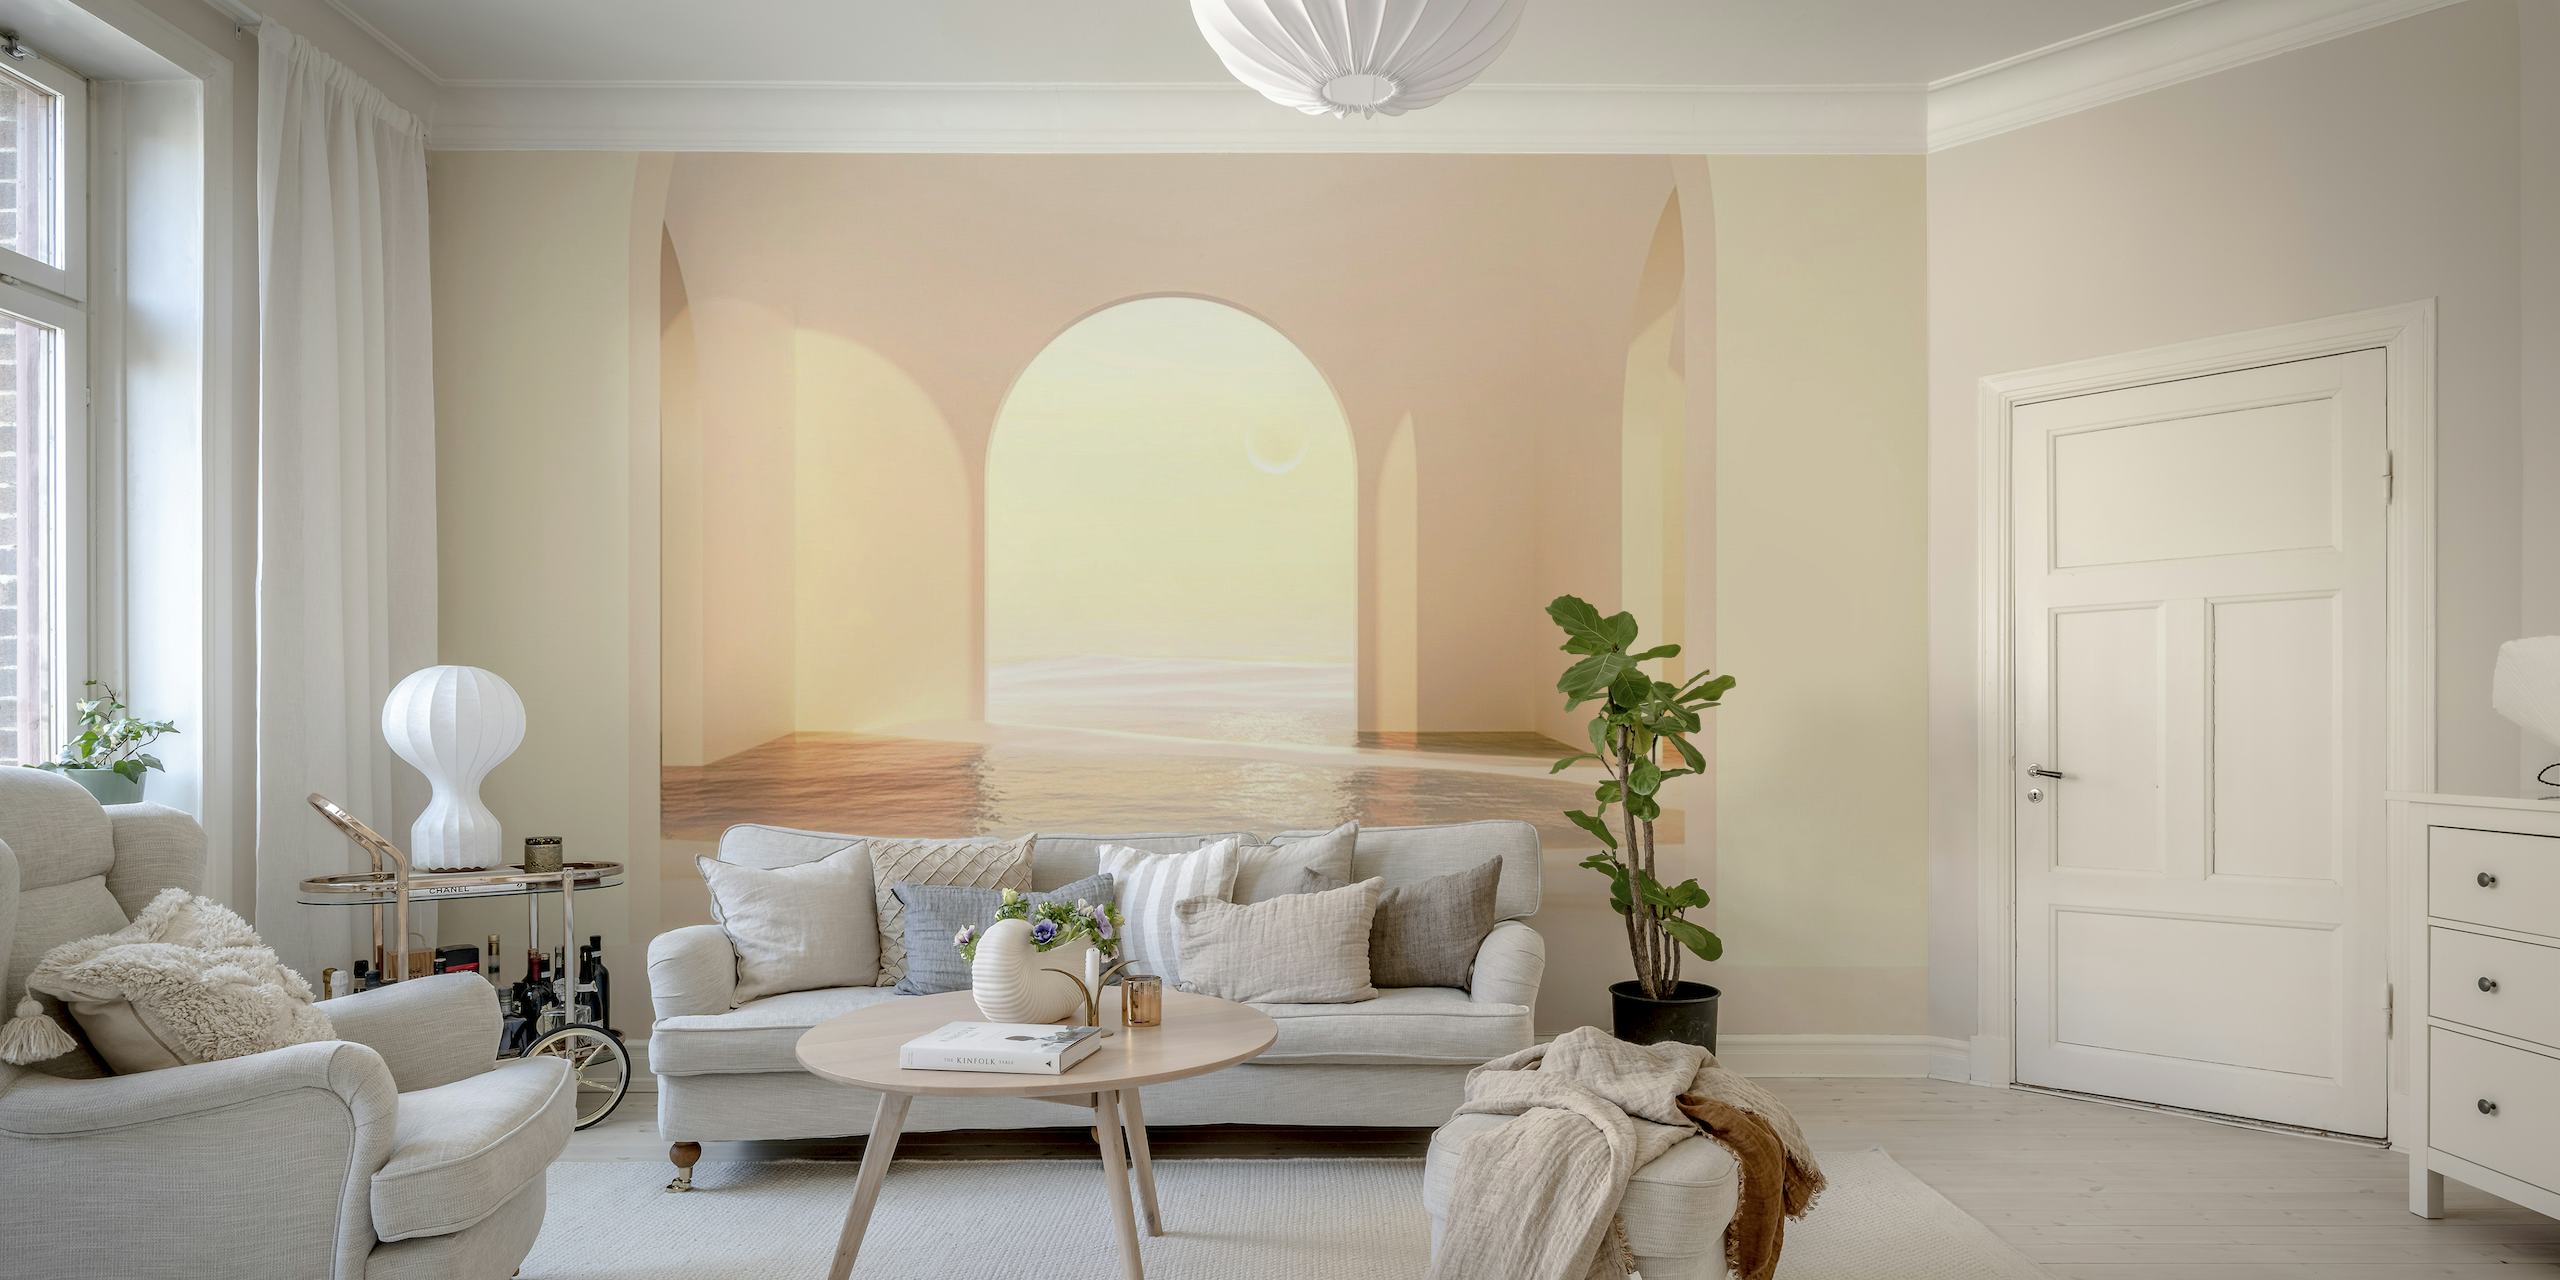 Tyylikäs holvikäytävä seinämaalaus pehmeällä valaistuksella ja lämpimillä kesäsävyillä.